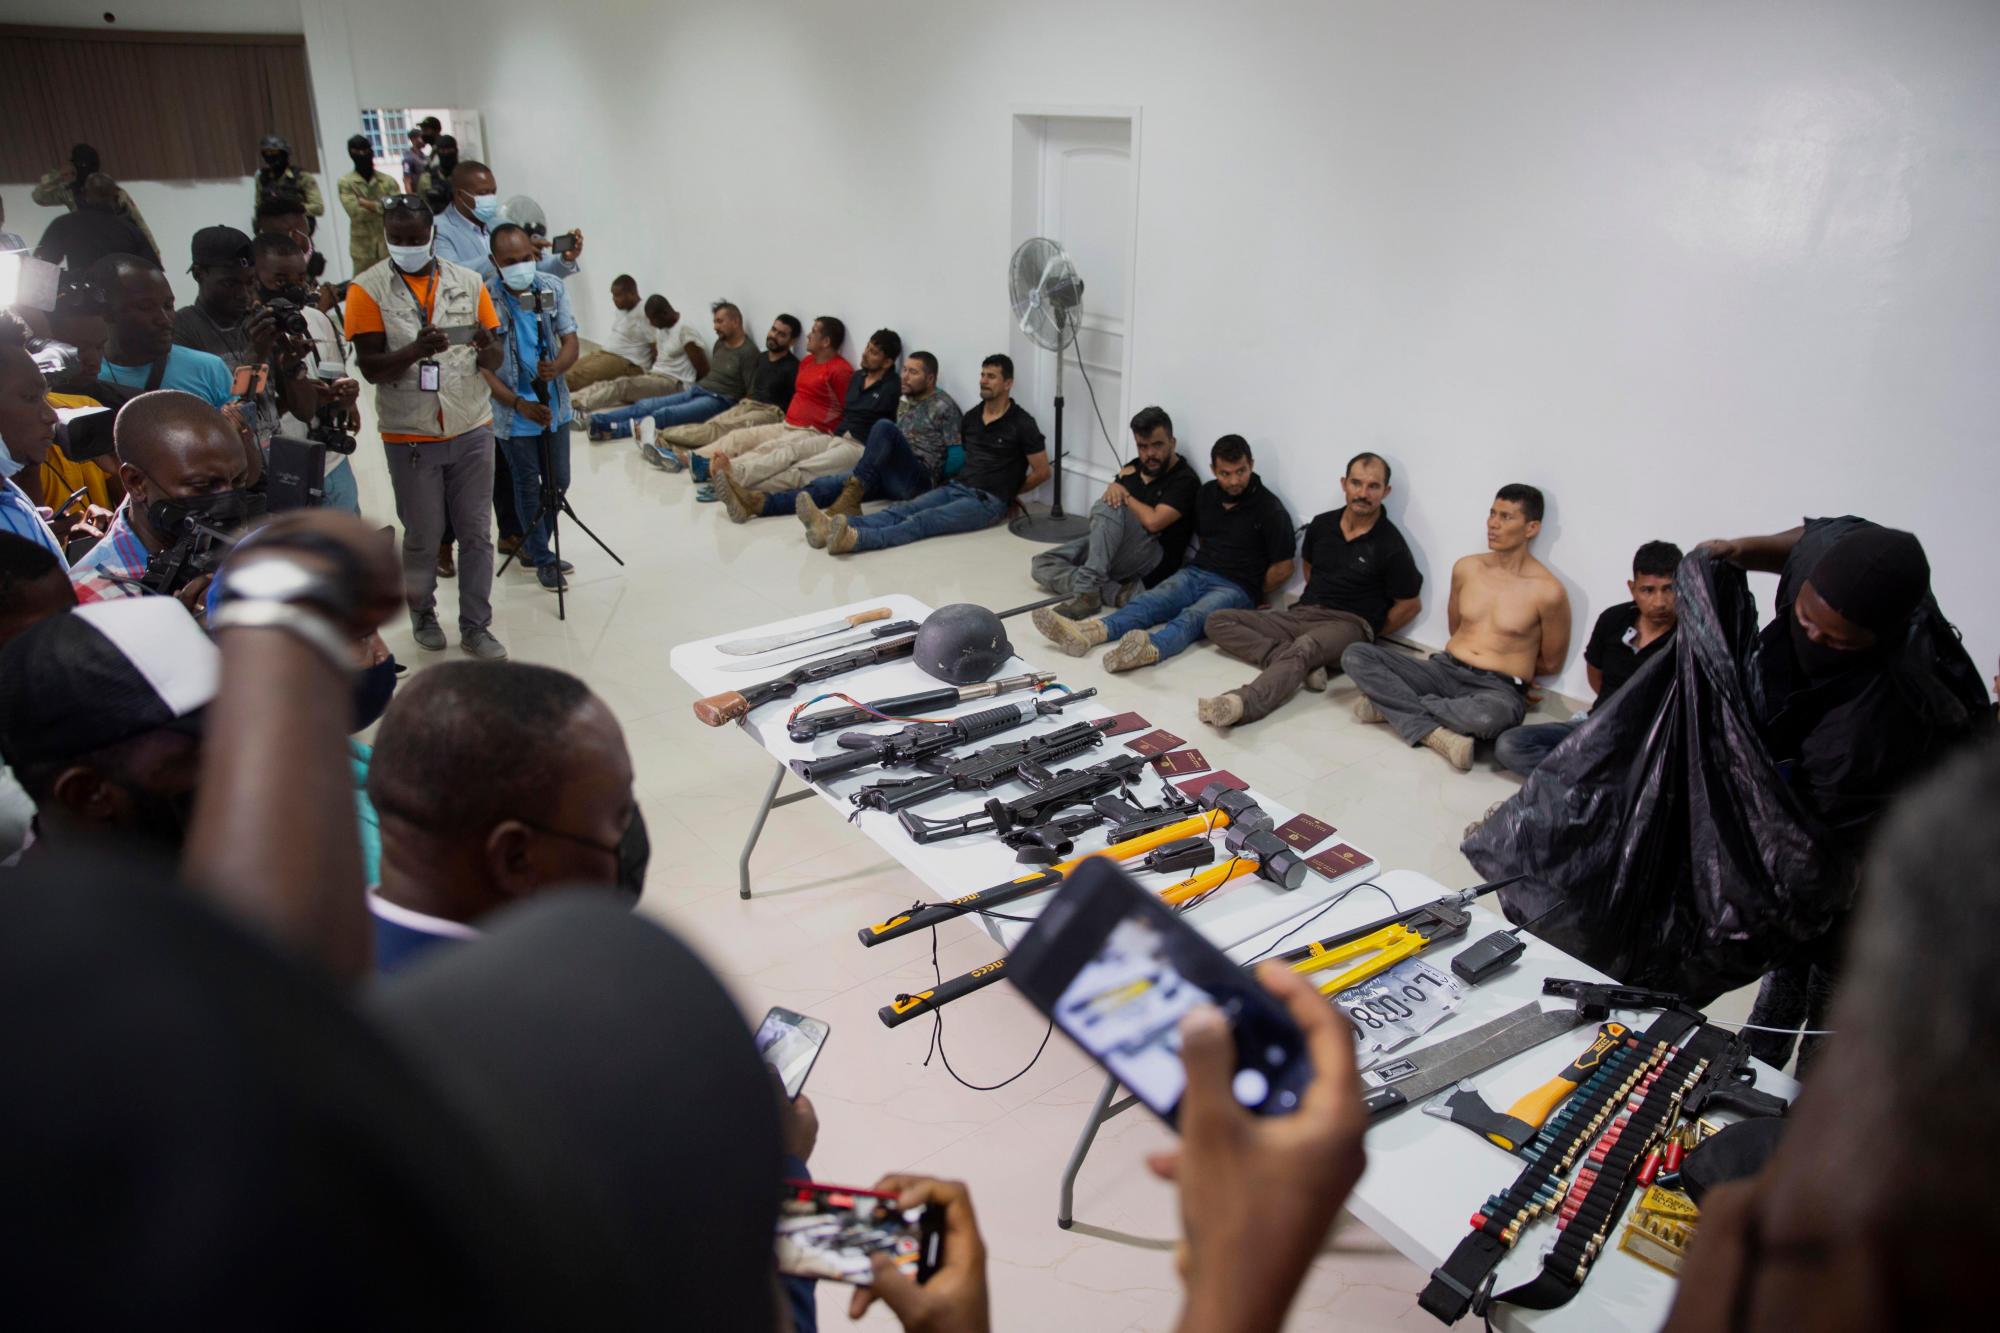 Los sospechosos del asesinato del presidente de Haití, Jovenel Moïse, son mostrados a los medios de comunicación, junto con las armas y el equipo que presuntamente utilizaron en el ataque, en la Dirección General de la policía en Puerto Príncipe, Haití, el jueves 8 de julio de 2021. .